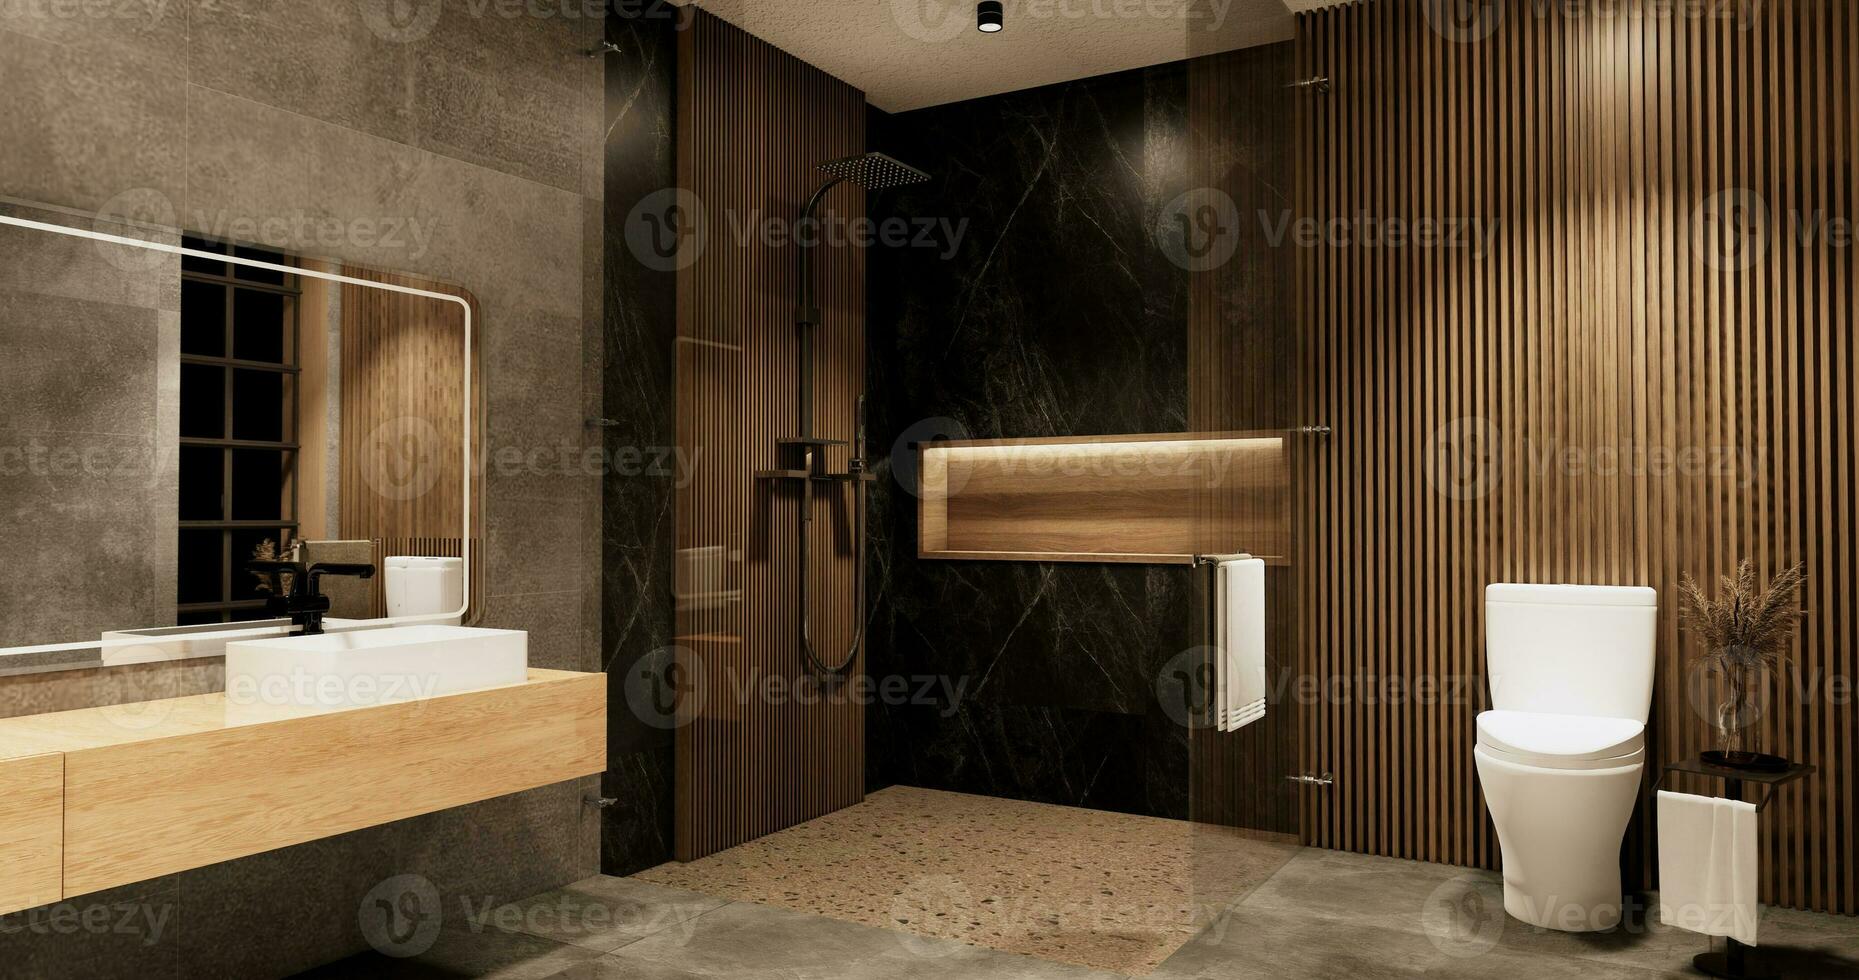 das Bad und Toilette auf Badezimmer japanisch Wabi Sabi Stil .3d Rendern foto